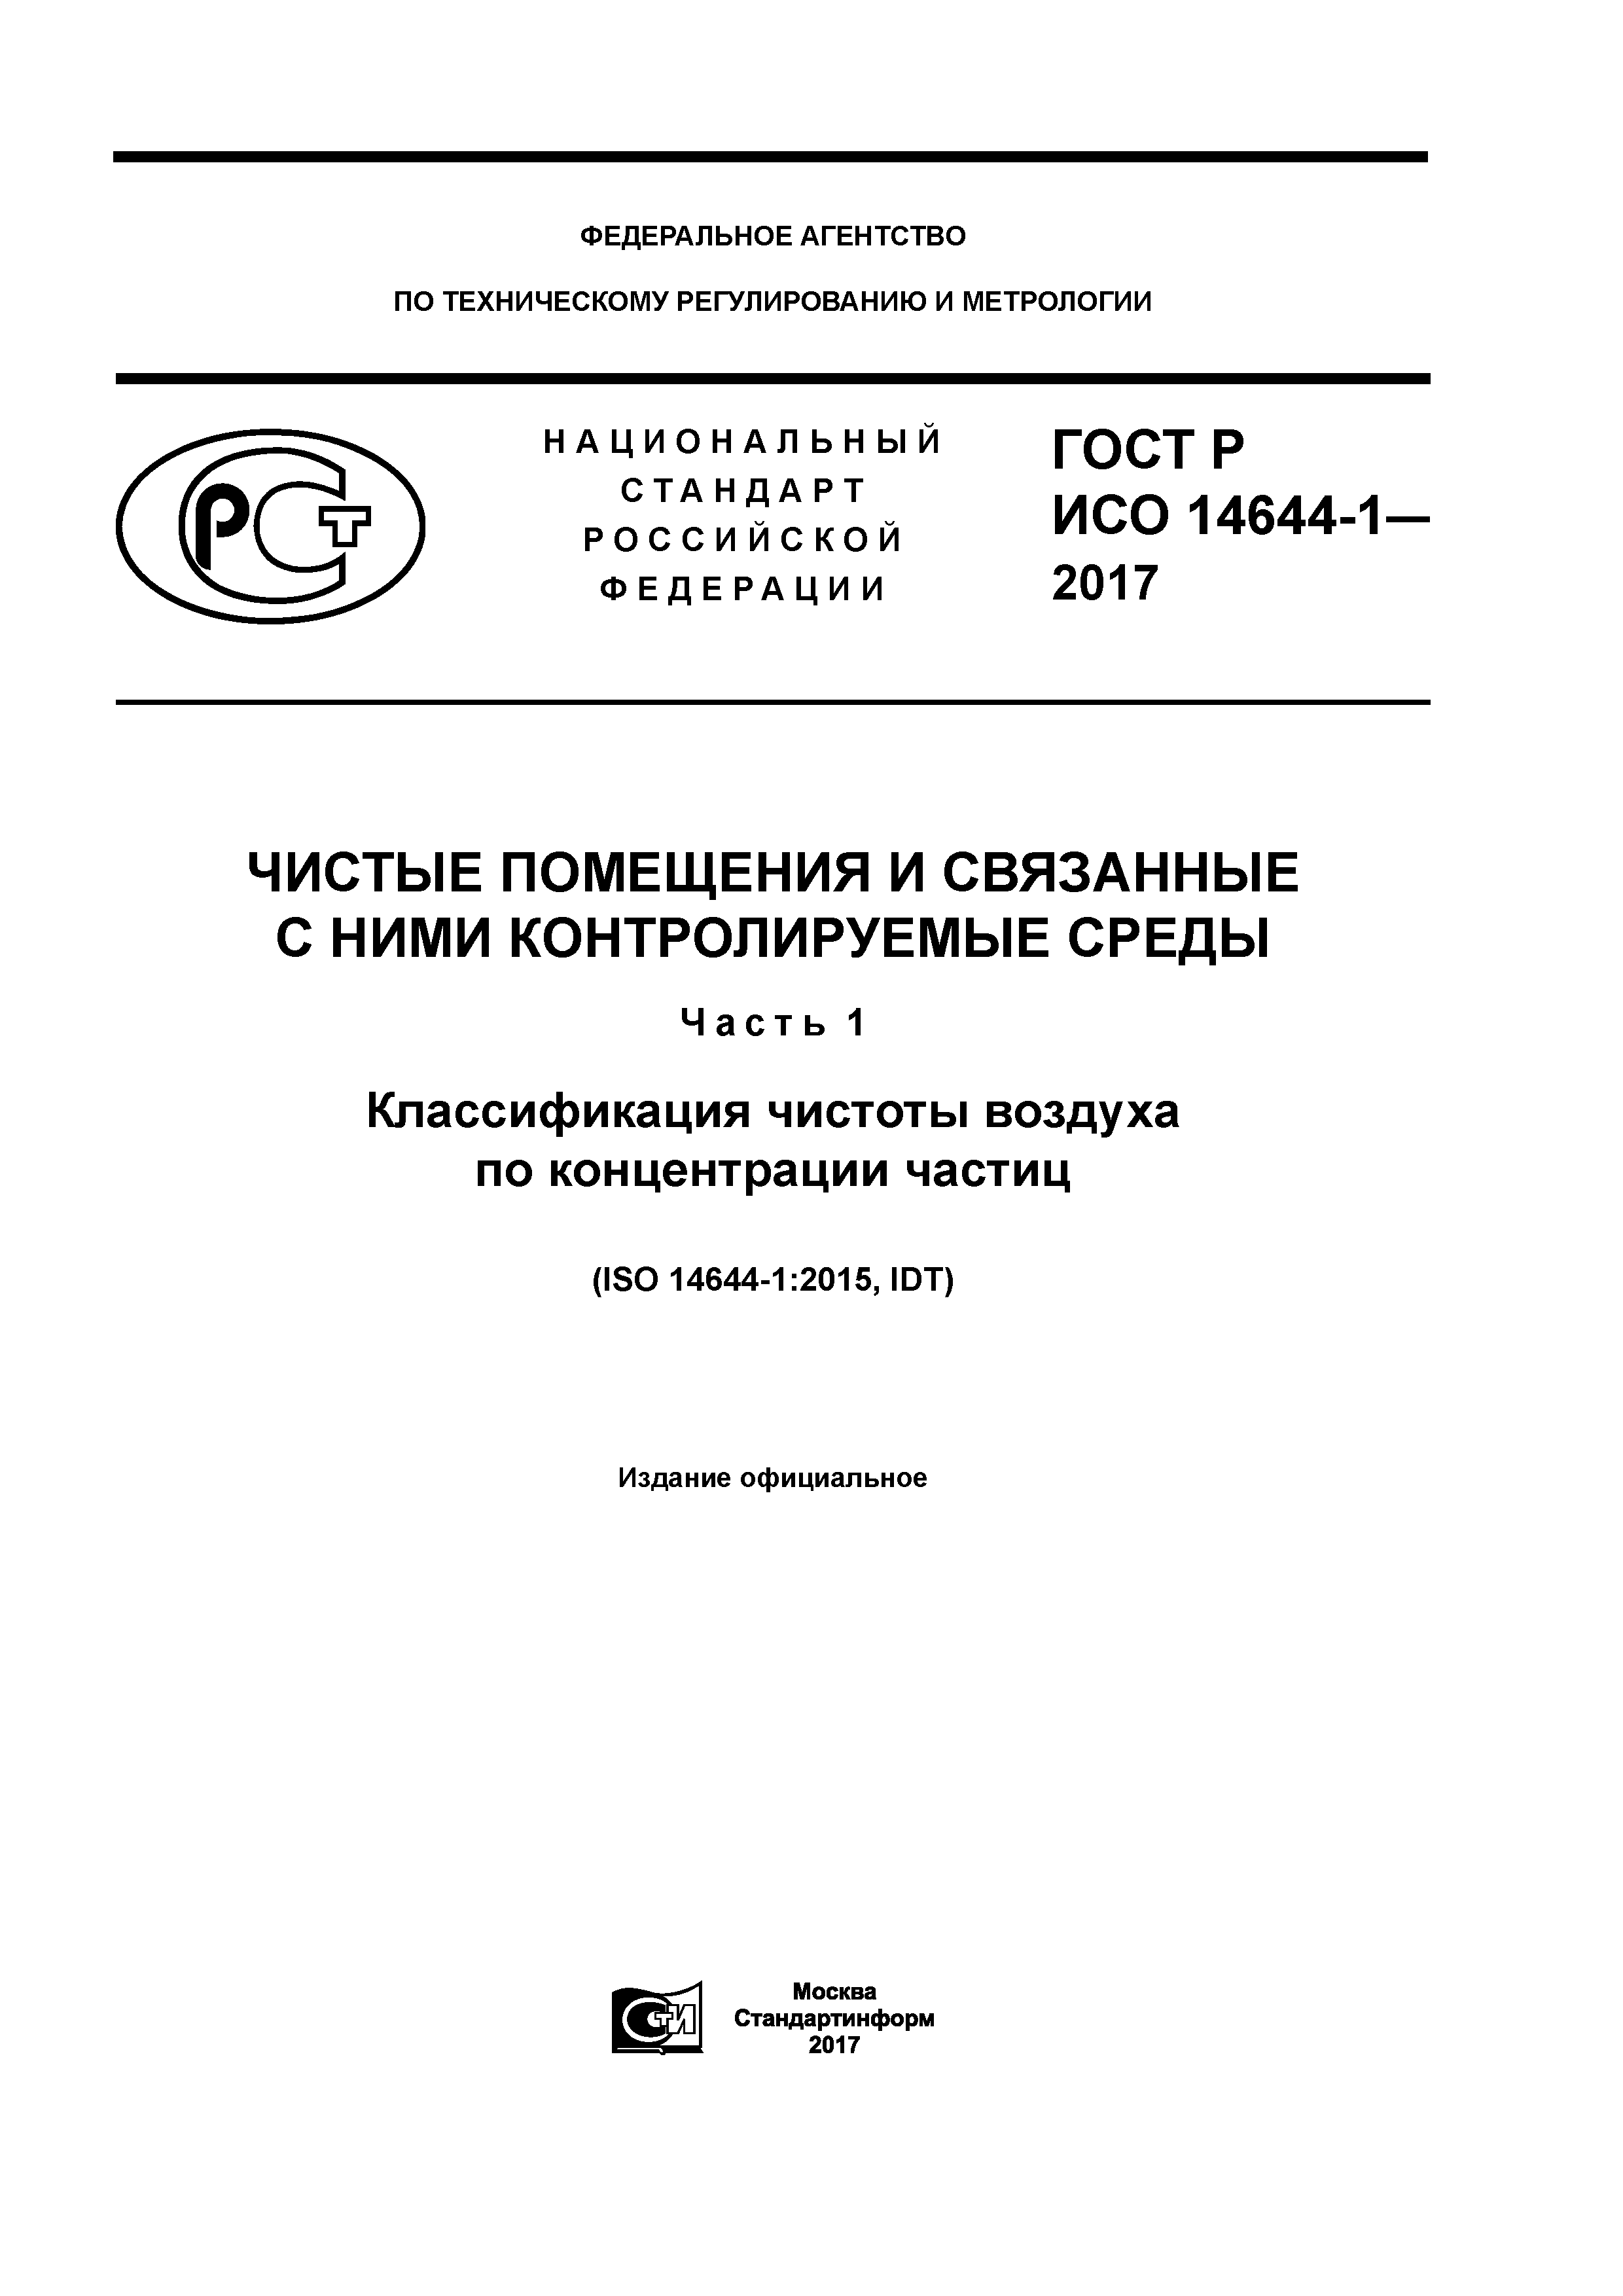 ГОСТ Р ИСО 14644-1-2017